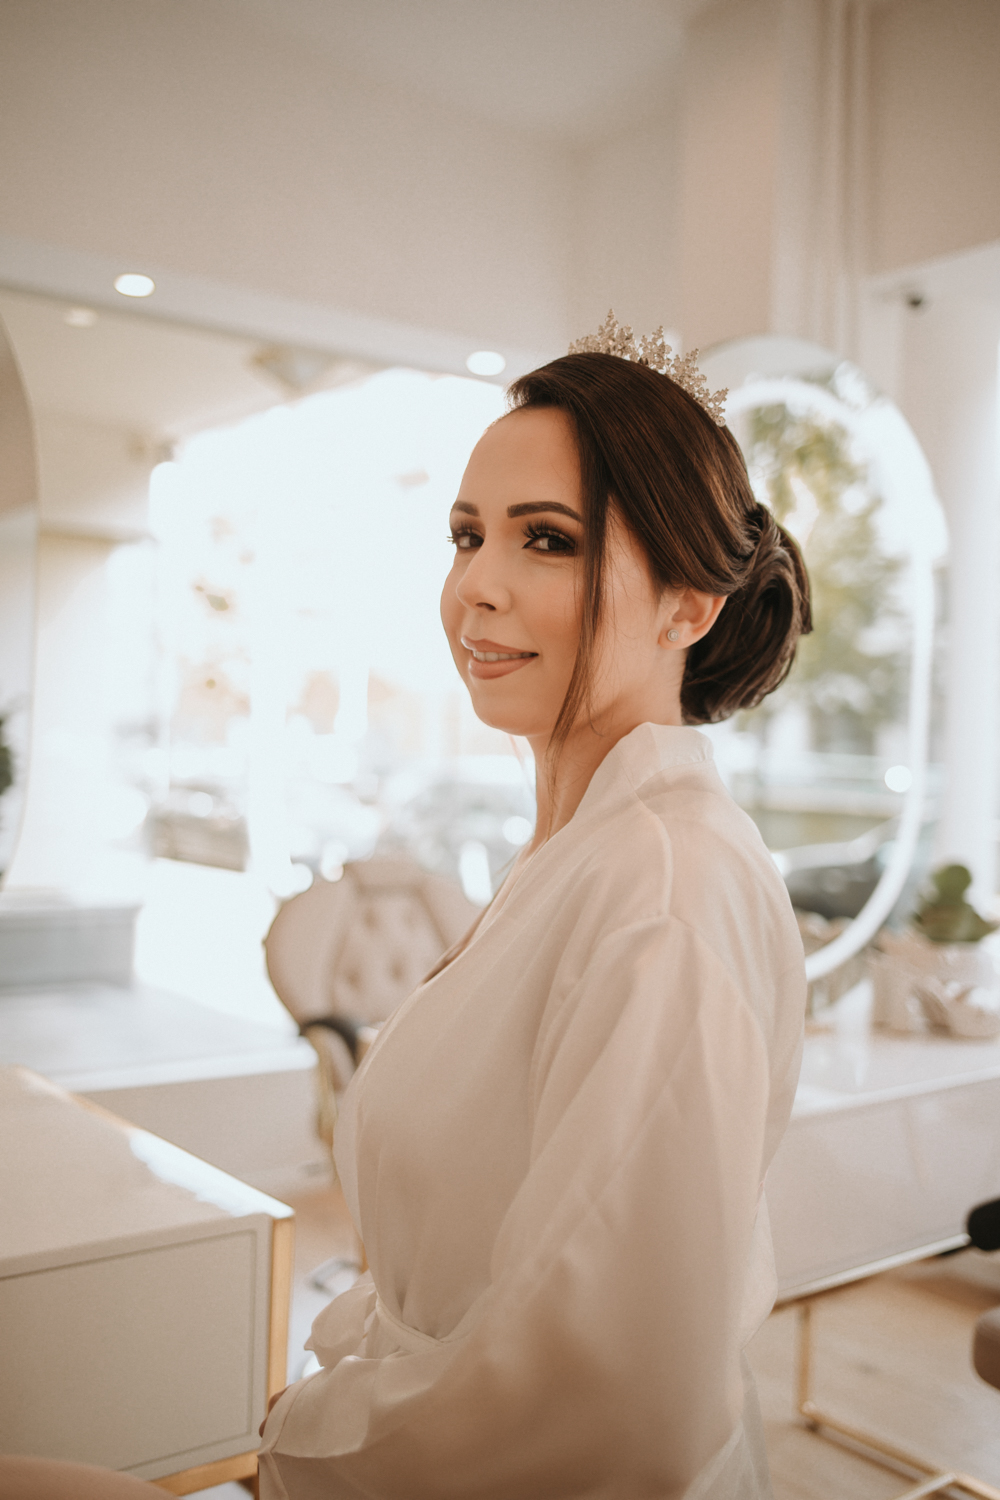 Getting Ready - Braut wird im Salon von new faces geschminkt